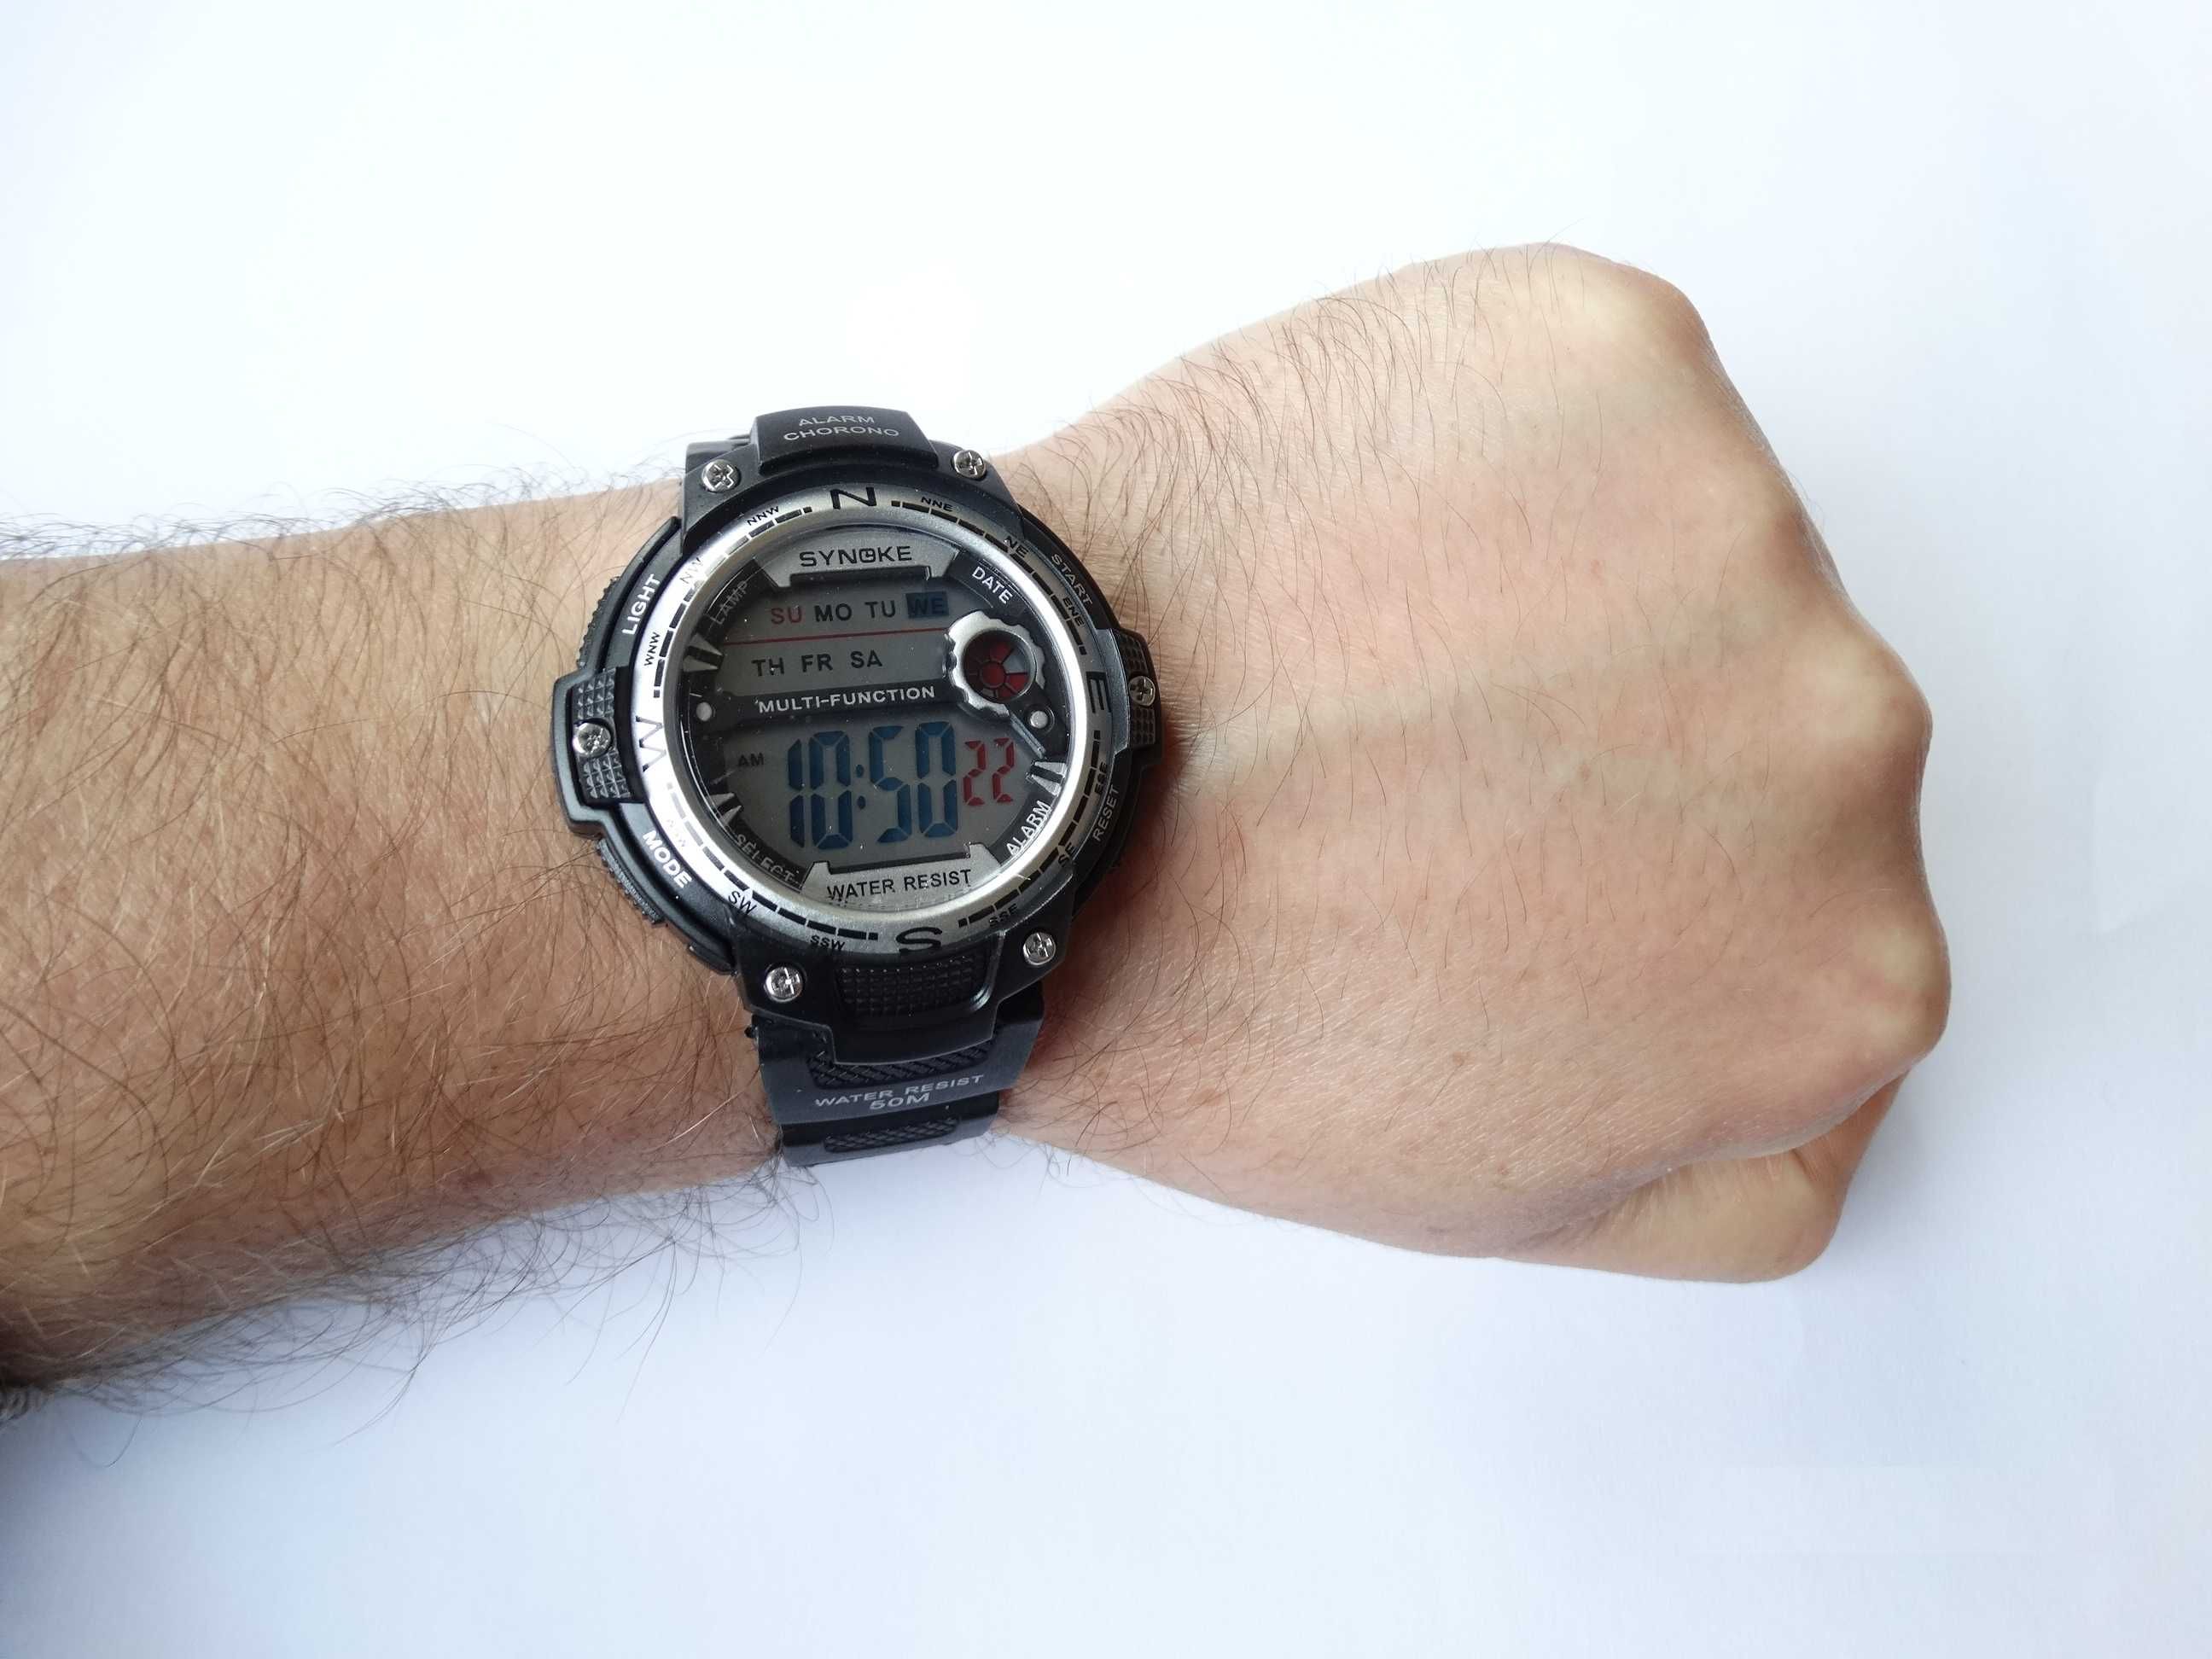 Sportowy zegarek elektroniczny Synoke czarny wodoszczelny 50m stoper